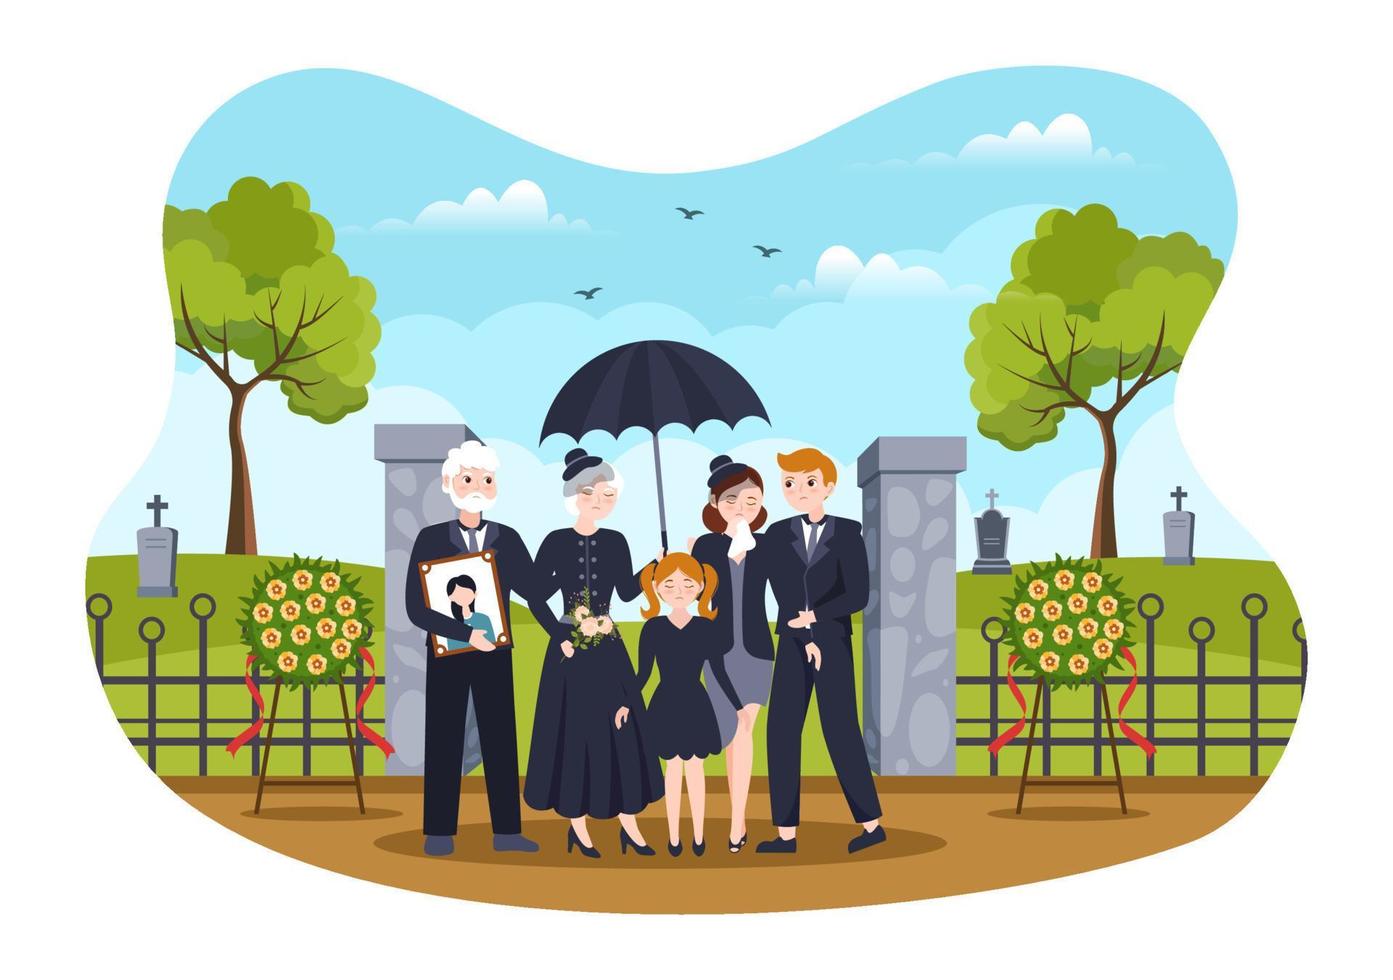 ceremonia fúnebre en la tumba de personas tristes vestidas de negro de pie y corona alrededor del ataúd en ilustración de plantilla dibujada a mano de caricatura plana vector